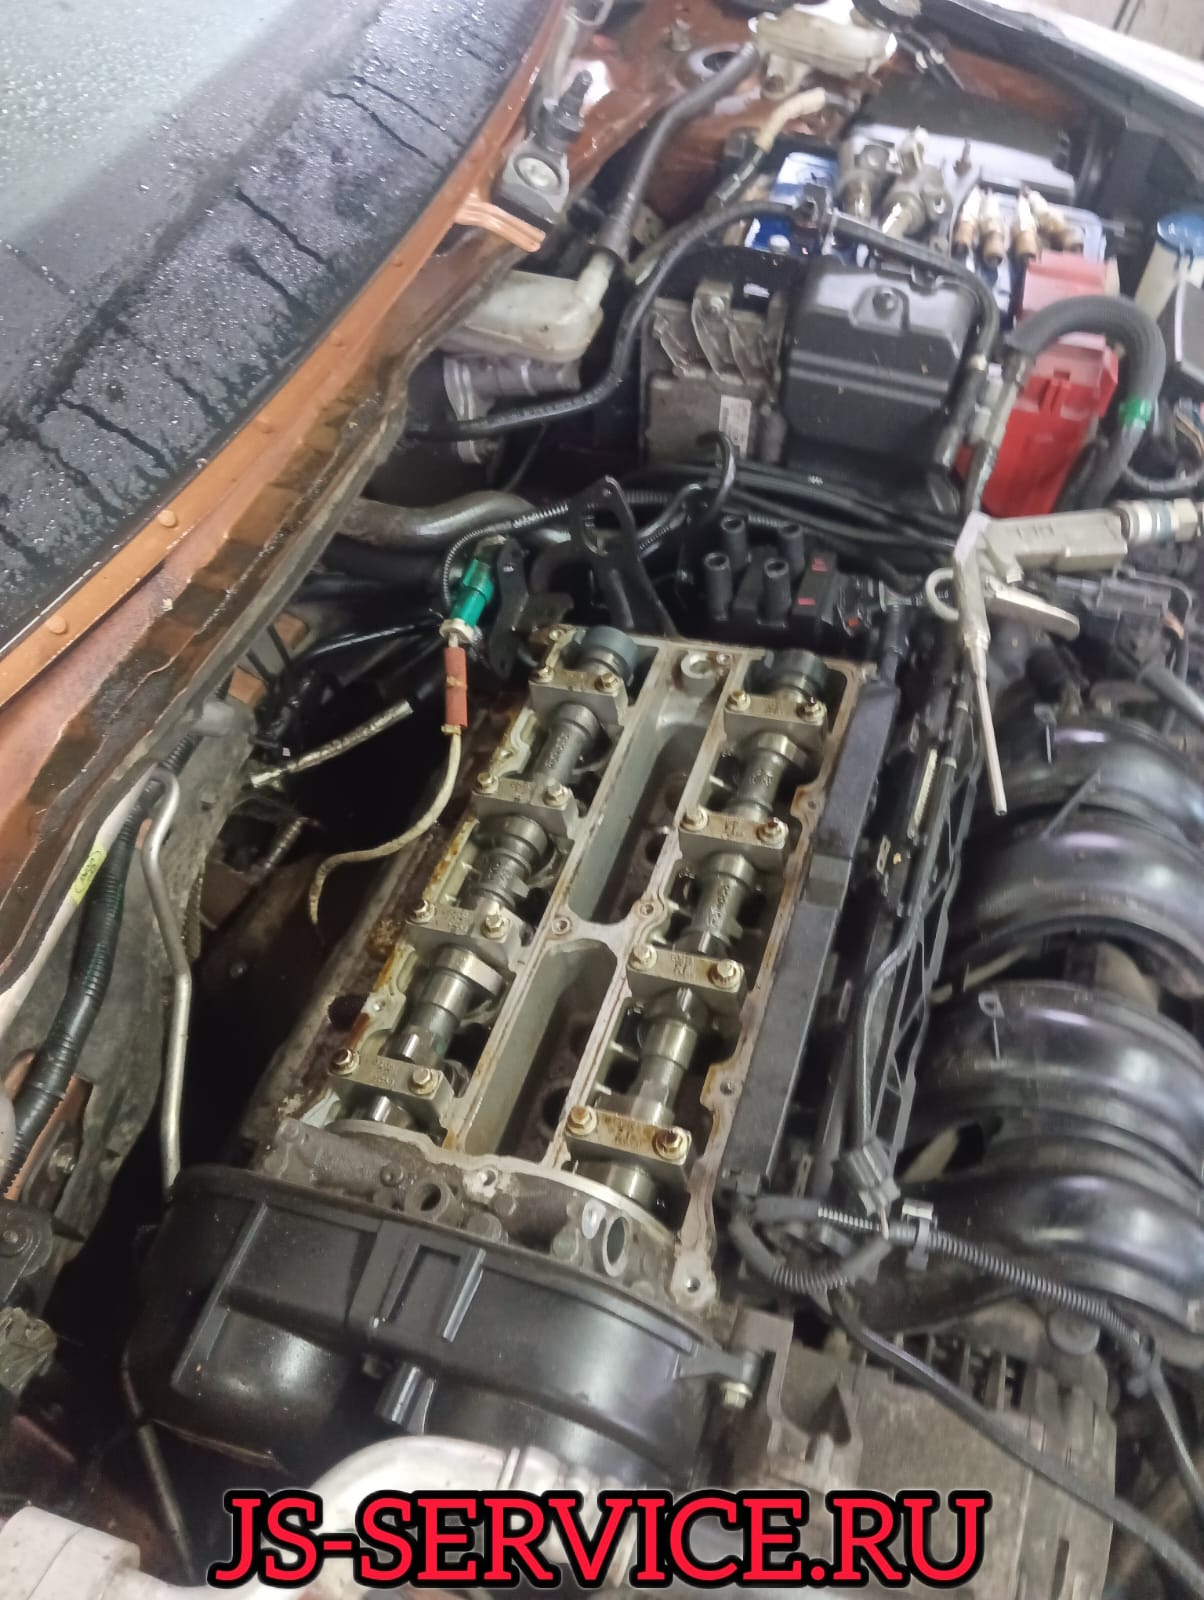 Ford Fiesta Устранение течи системы охлаждения - замена технических заглушек головки блока цилиндров, старые сгнили. JS-Service в Пушкине.